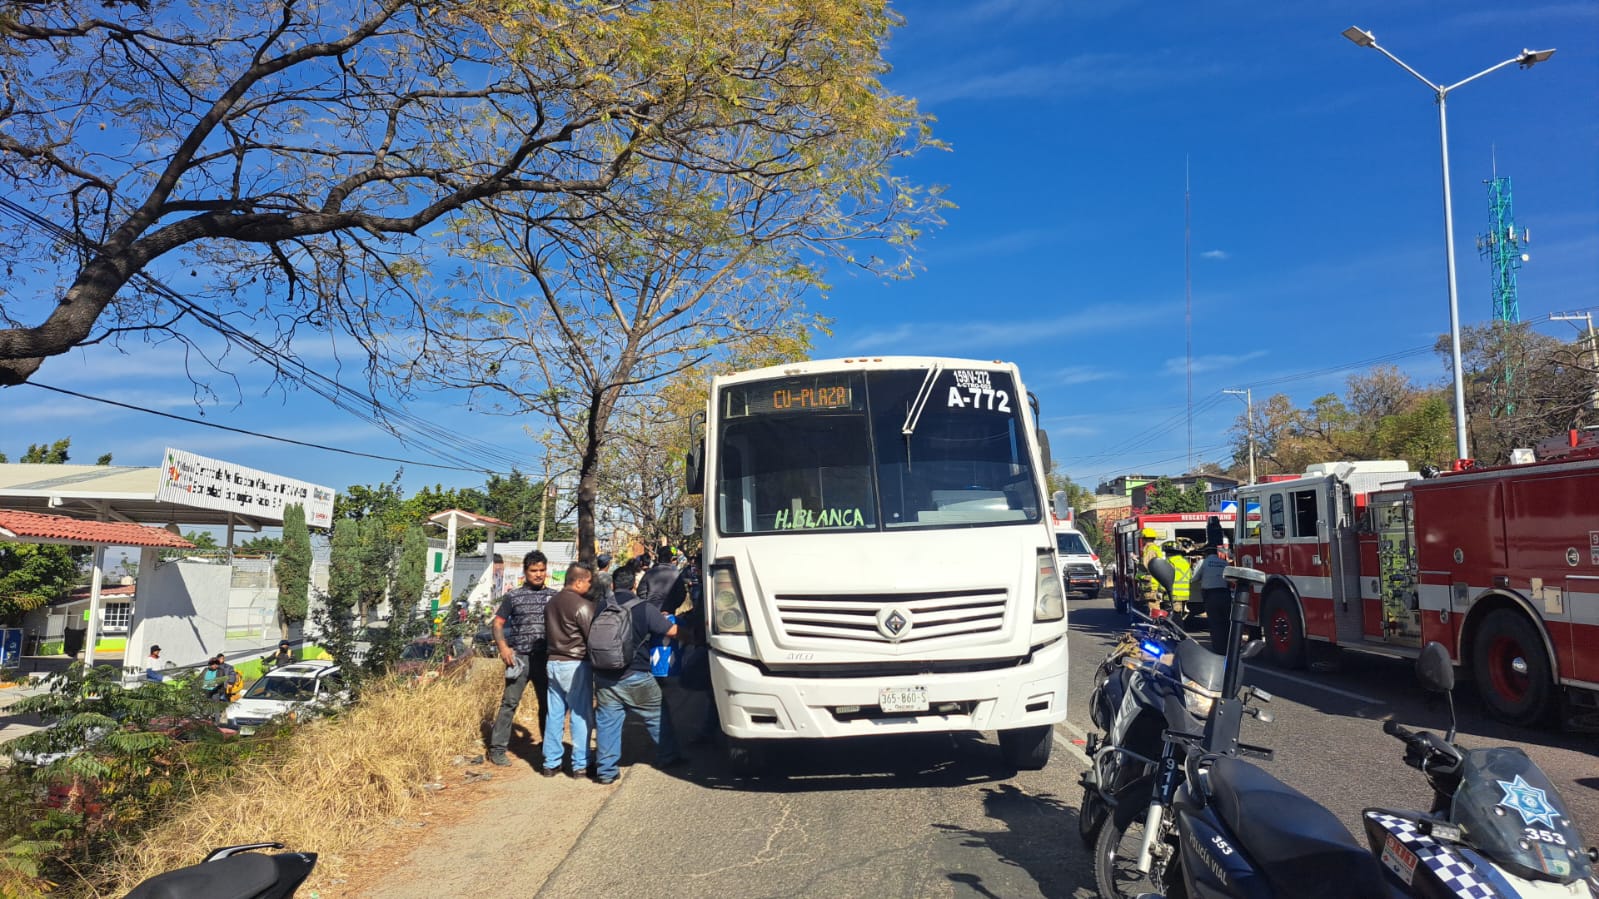 El camión impactado pertenece a la empresa Urbanos de la Ciudad de Oaxaca S. A. y era conducido por Anibal R. C. Foto: Jorge Pérez.